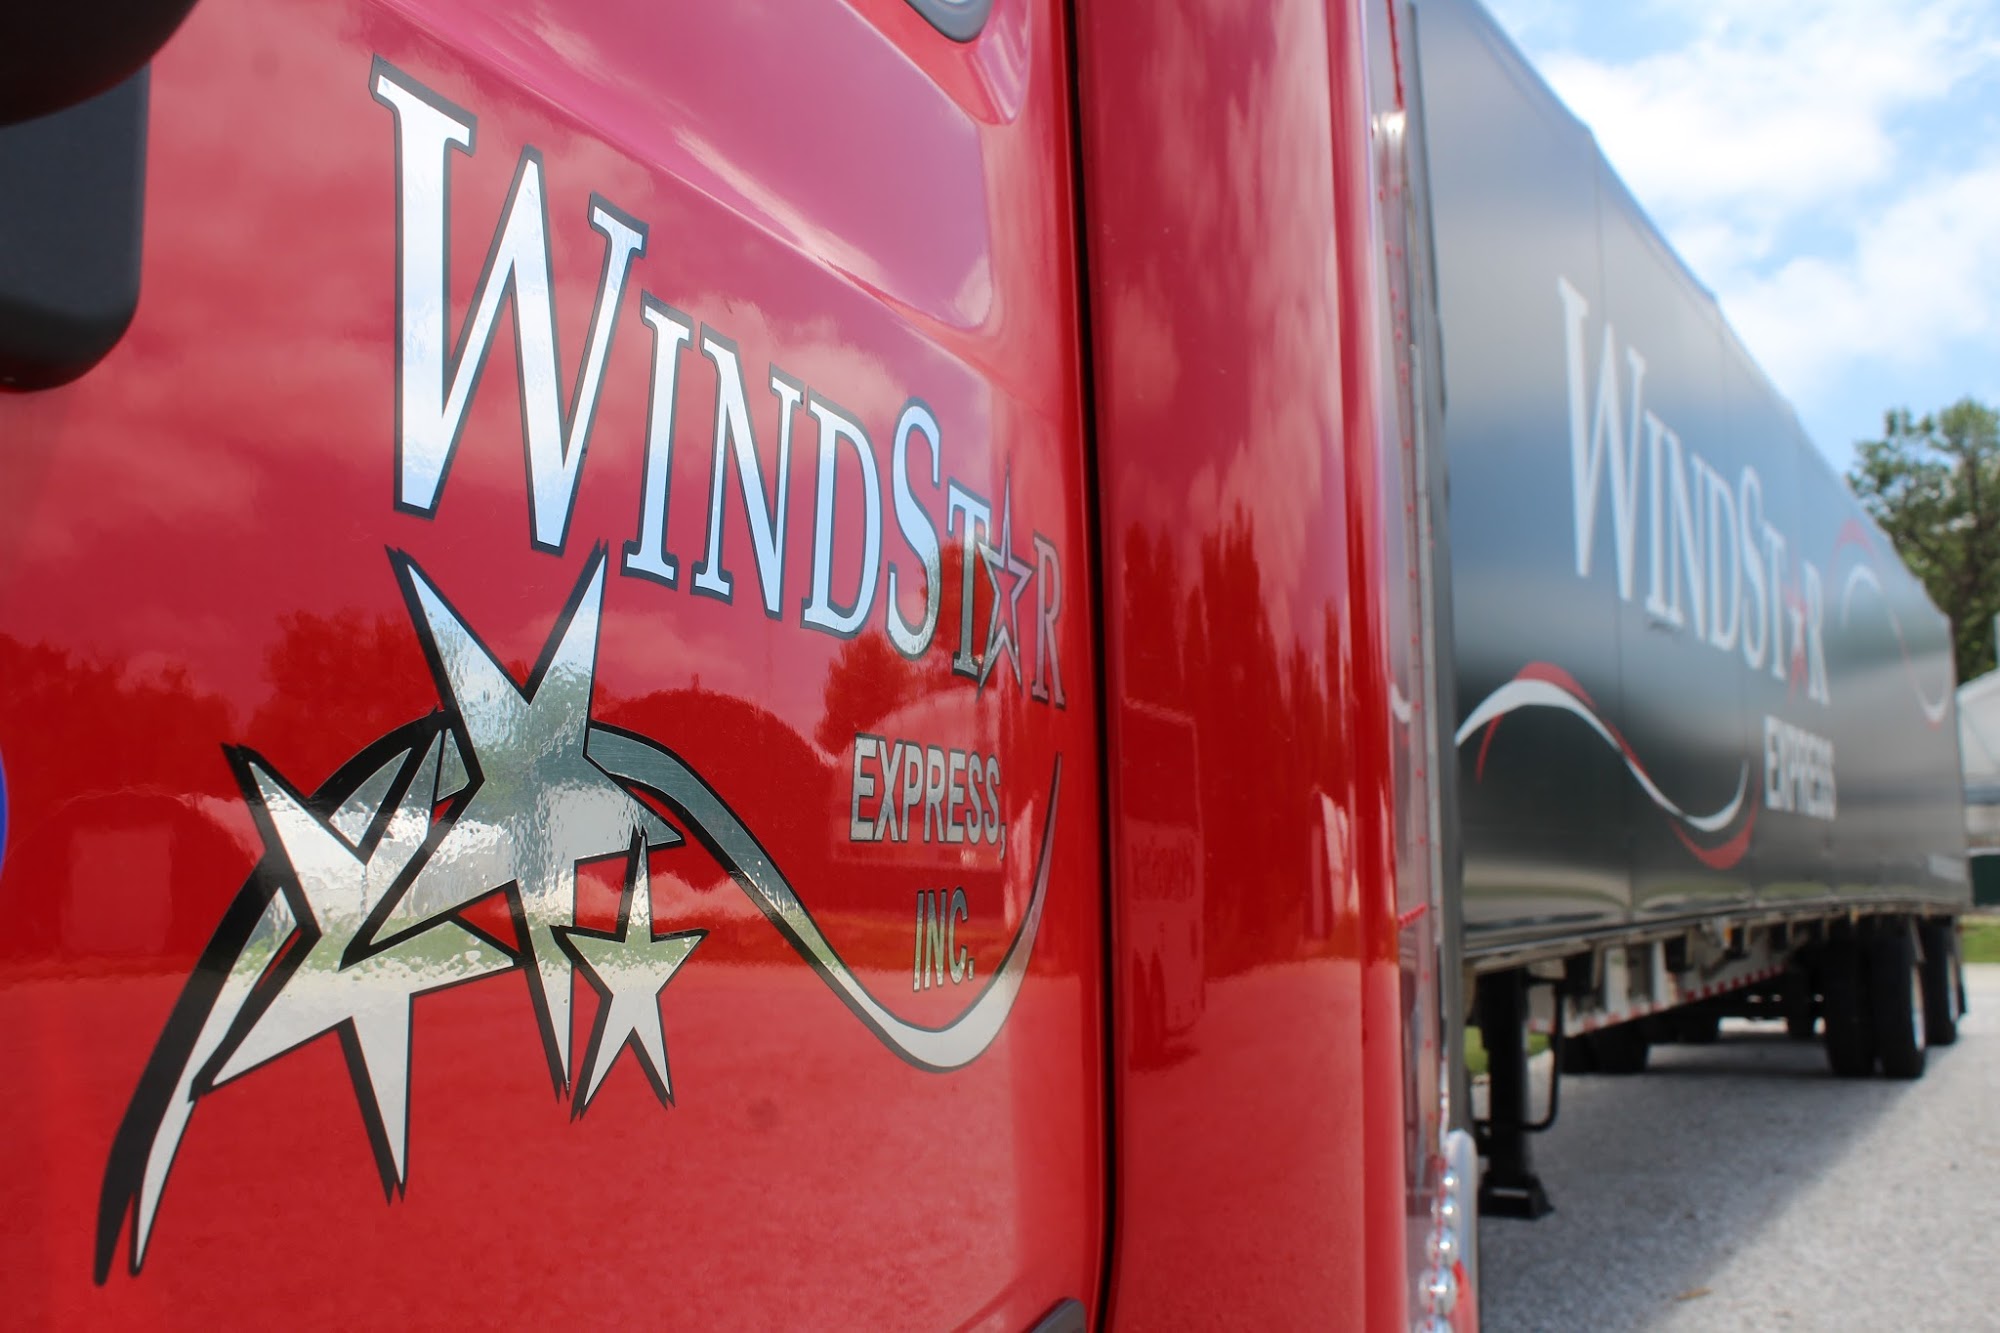 Windstar Express, Inc.